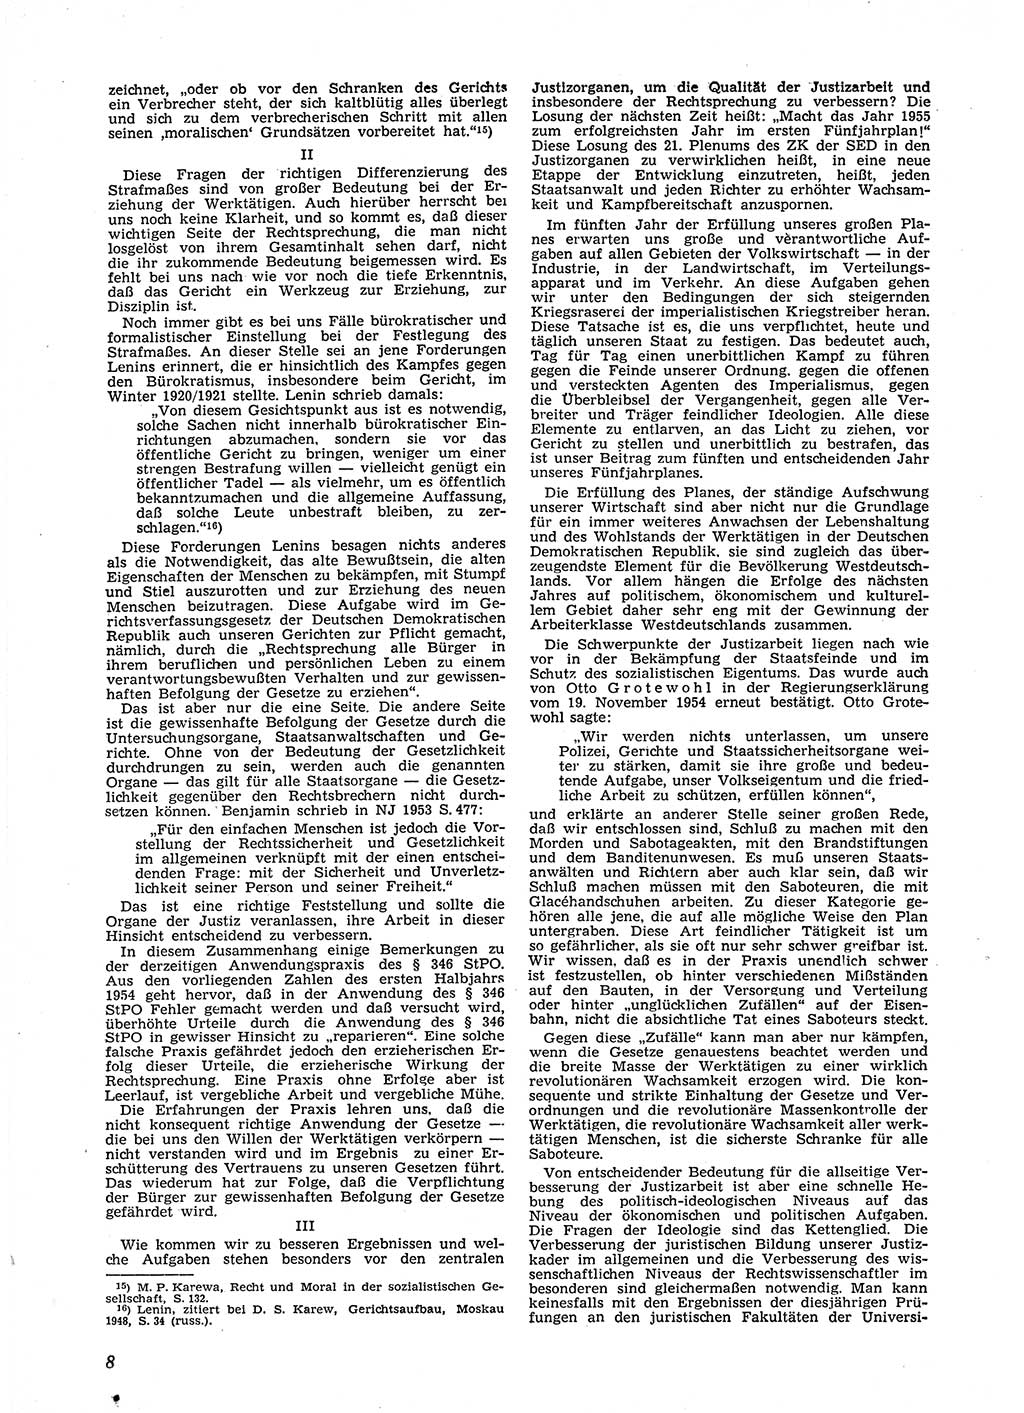 Neue Justiz (NJ), Zeitschrift für Recht und Rechtswissenschaft [Deutsche Demokratische Republik (DDR)], 9. Jahrgang 1955, Seite 8 (NJ DDR 1955, S. 8)